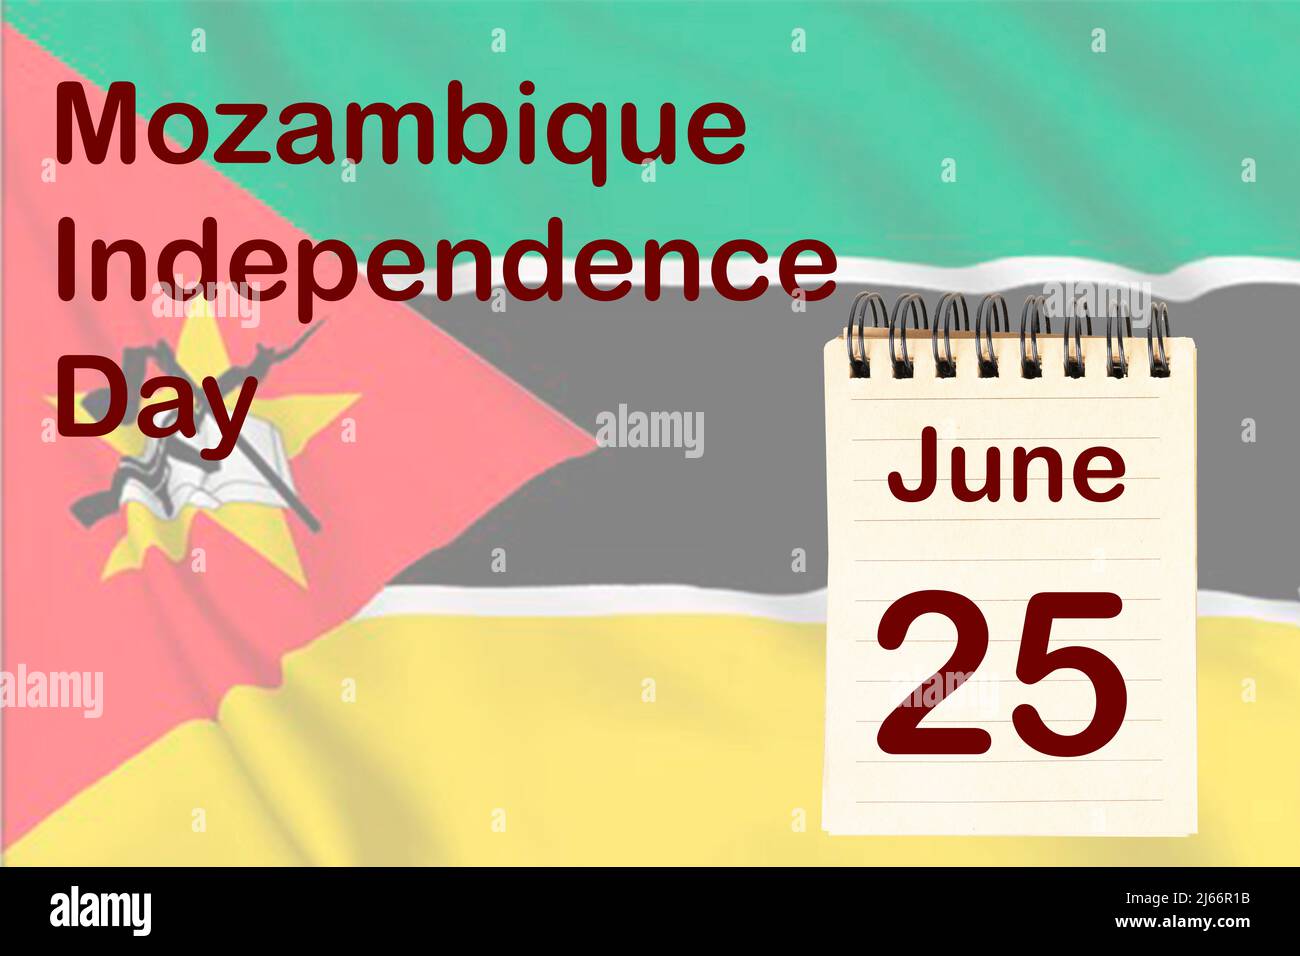 La célébration de la Journée de l'indépendance du Mozambique avec le drapeau et le calendrier indiquant le 25 juin Banque D'Images